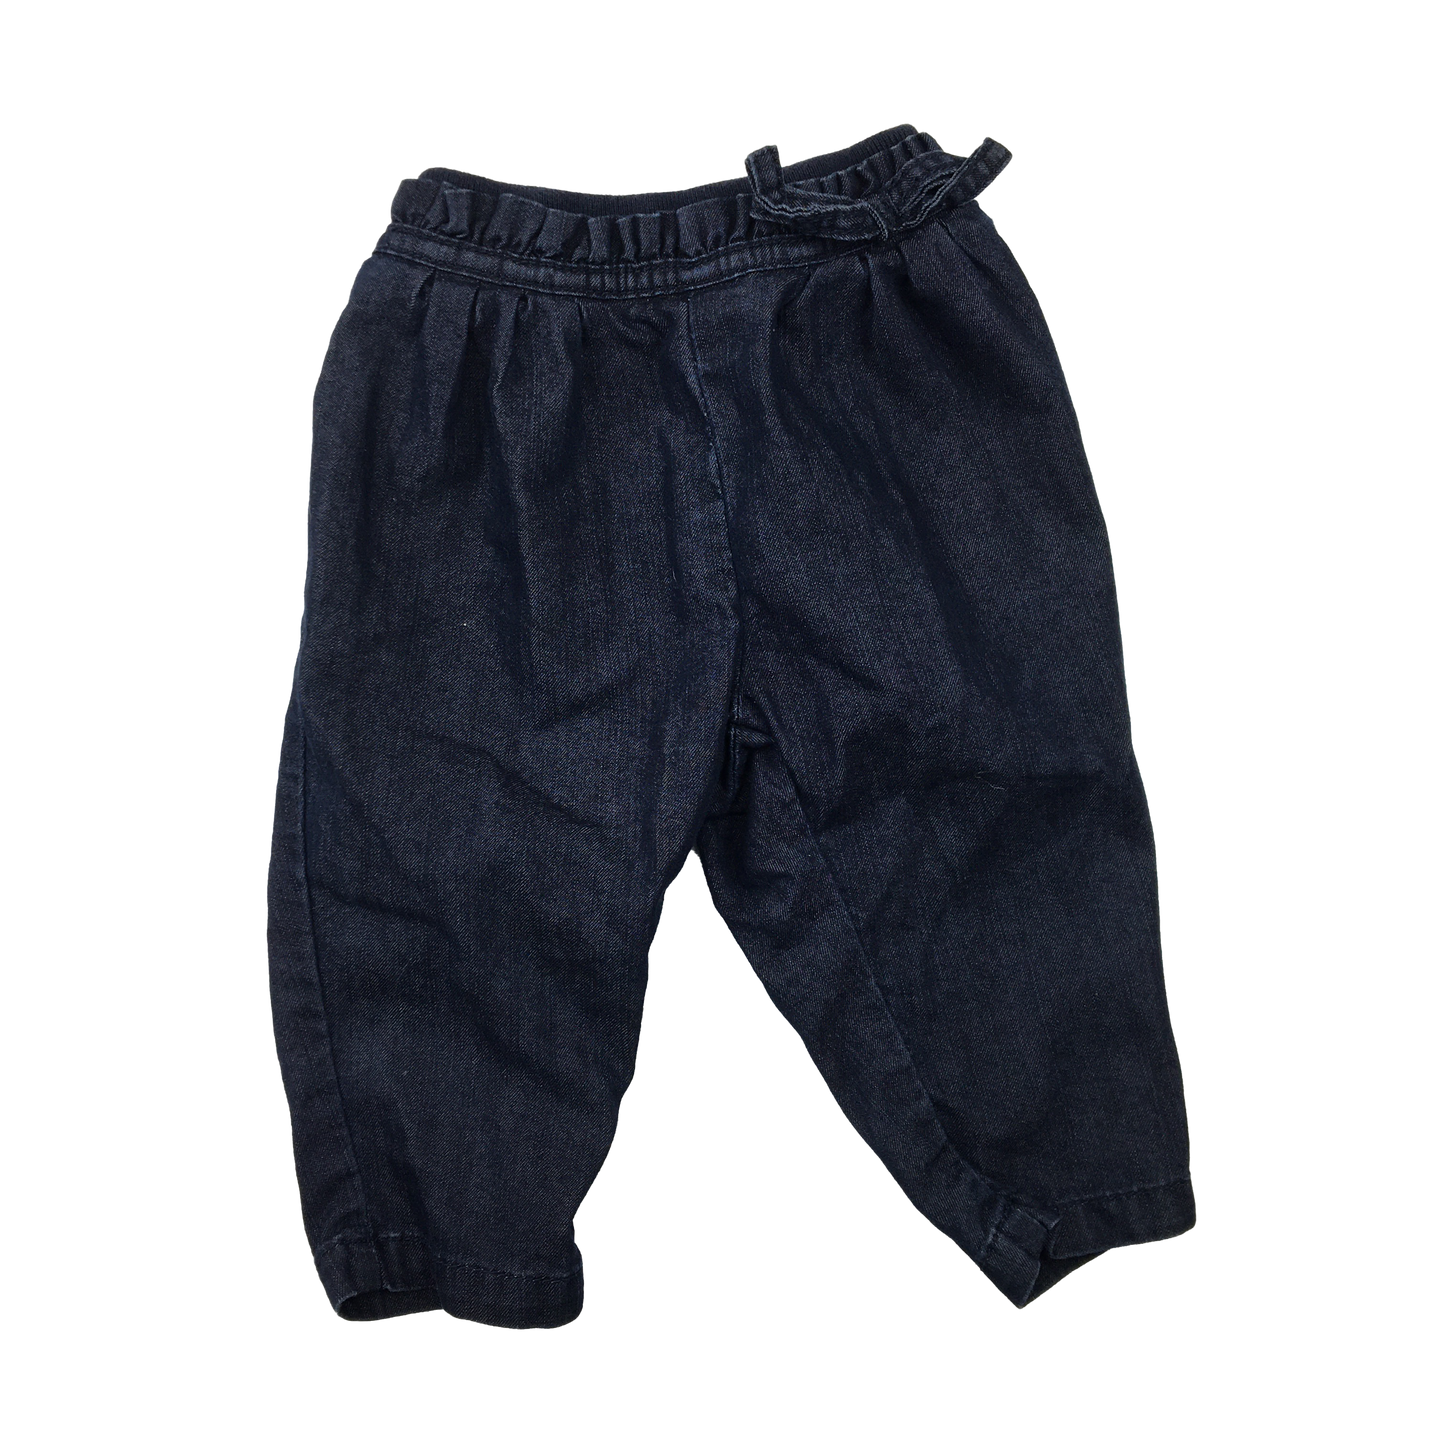 Baby Gap Blue Dark Wash Jeans 6-12M